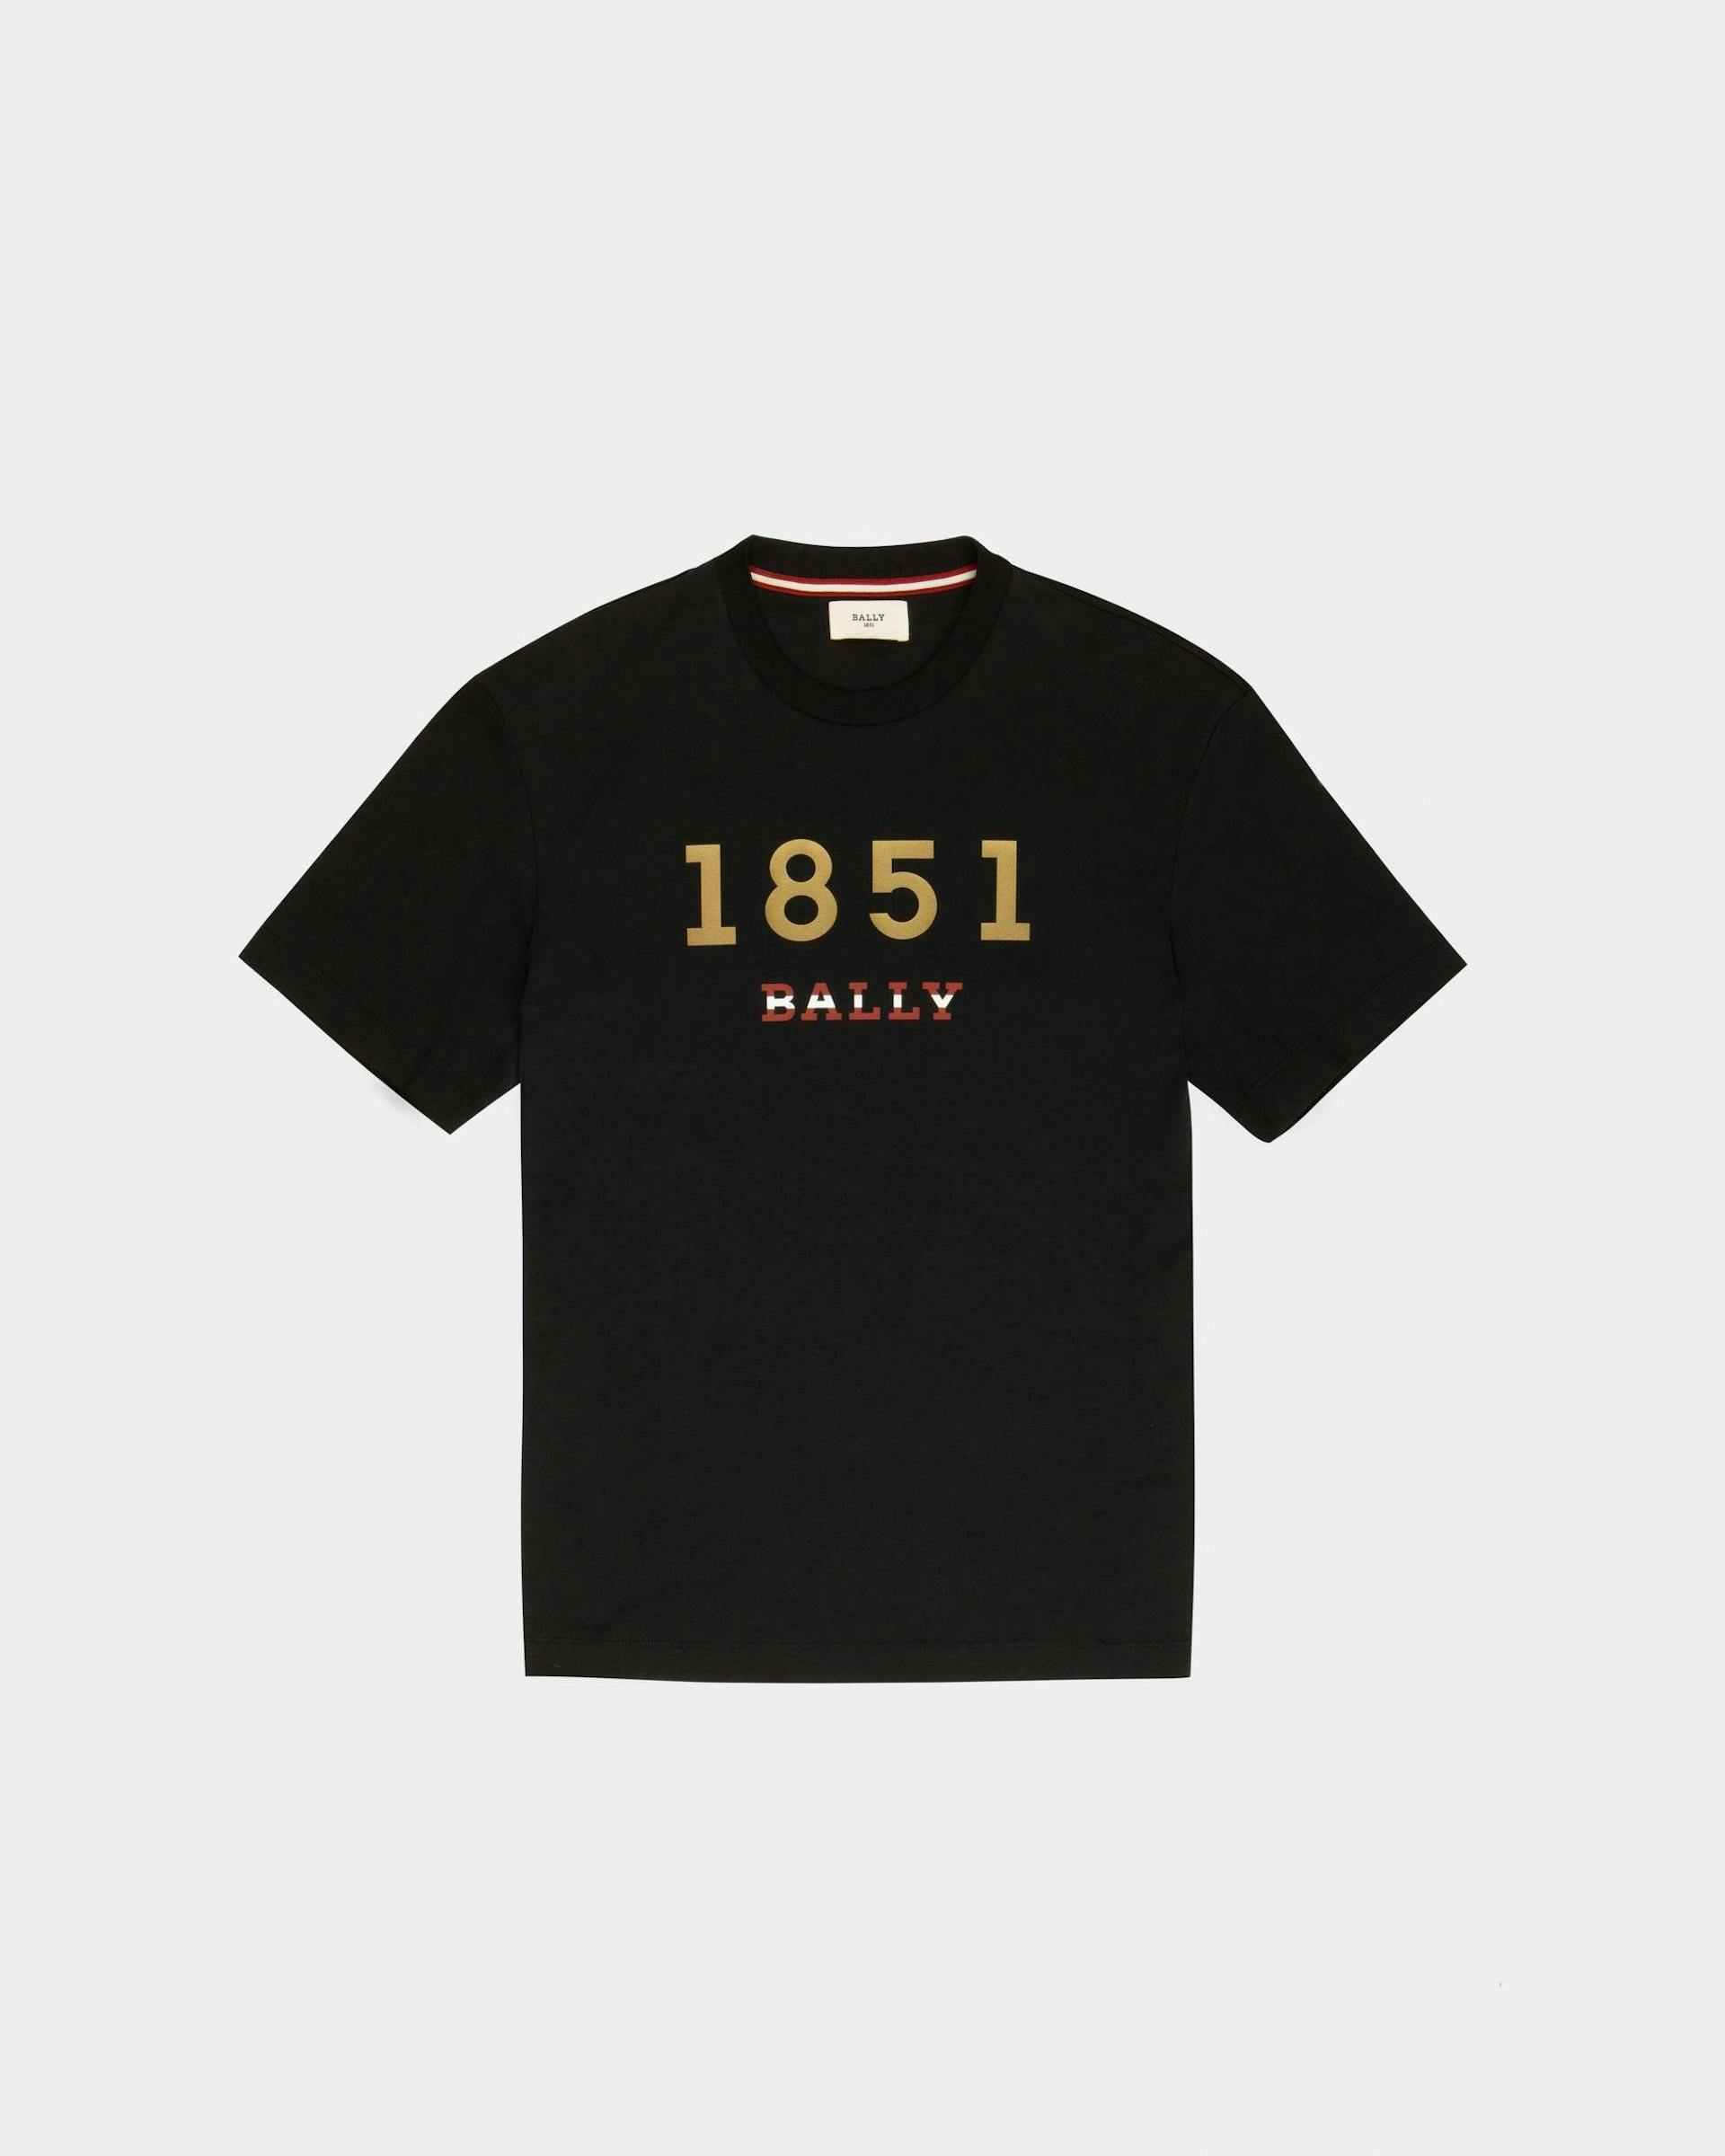 T-Shirt En Coton Noir - Homme - Bally - 01